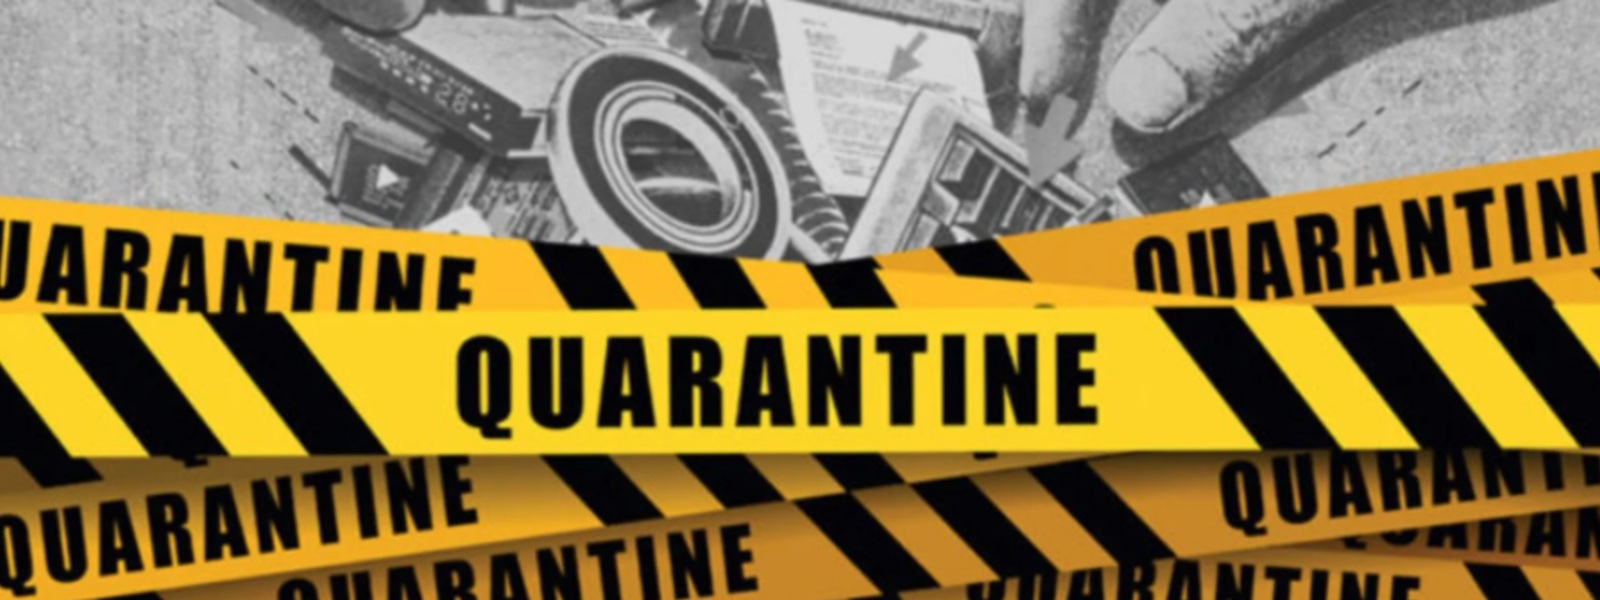 7,990 people in 70 tri-service-managed QCs are still in quarantine: NOCPCO